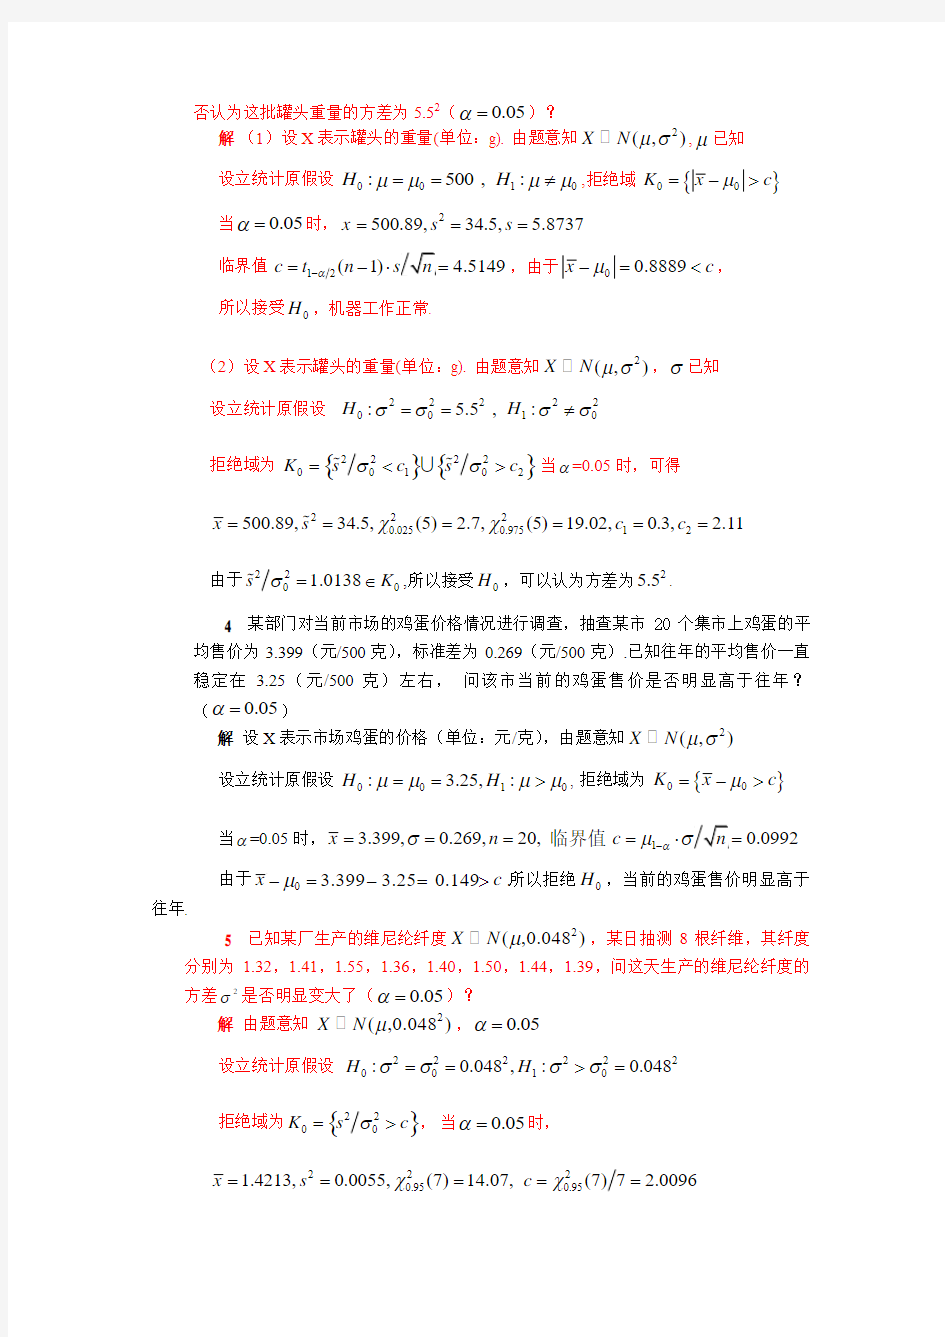 清华大学 杨虎 应用数理统计课后习题参考答案2